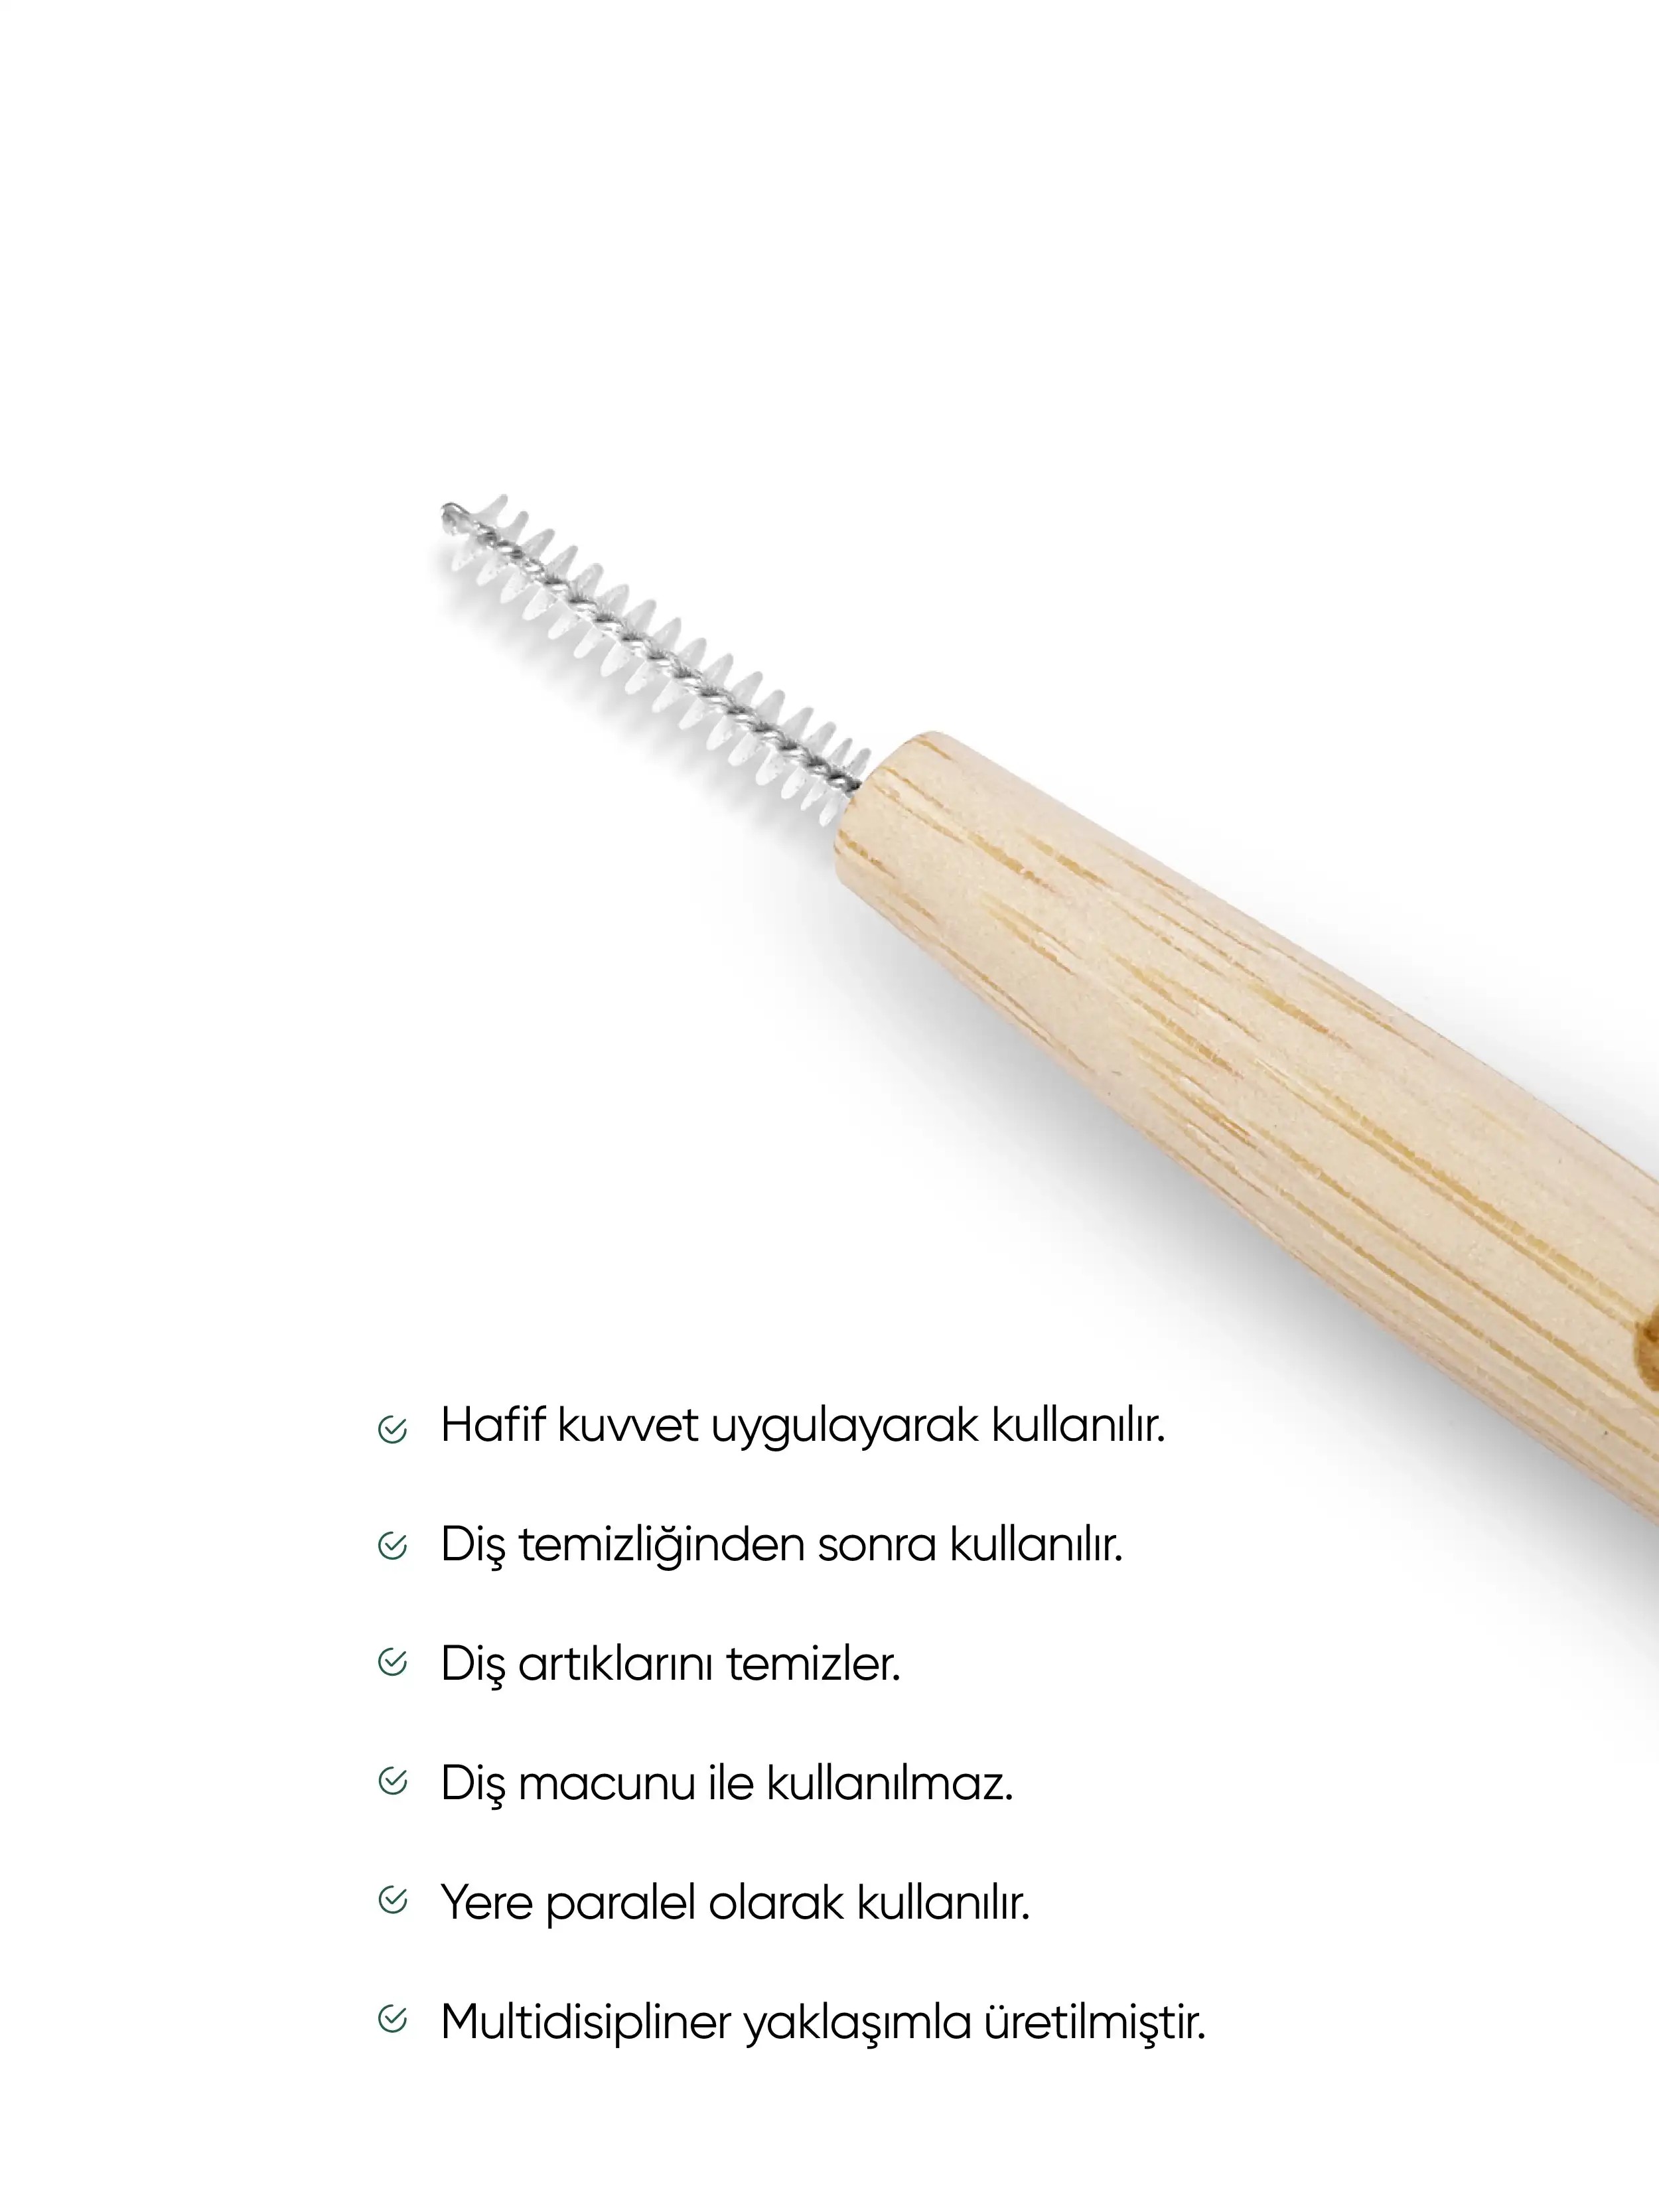 T-Brush Bambu Arayüz Fırçası (6 adet)